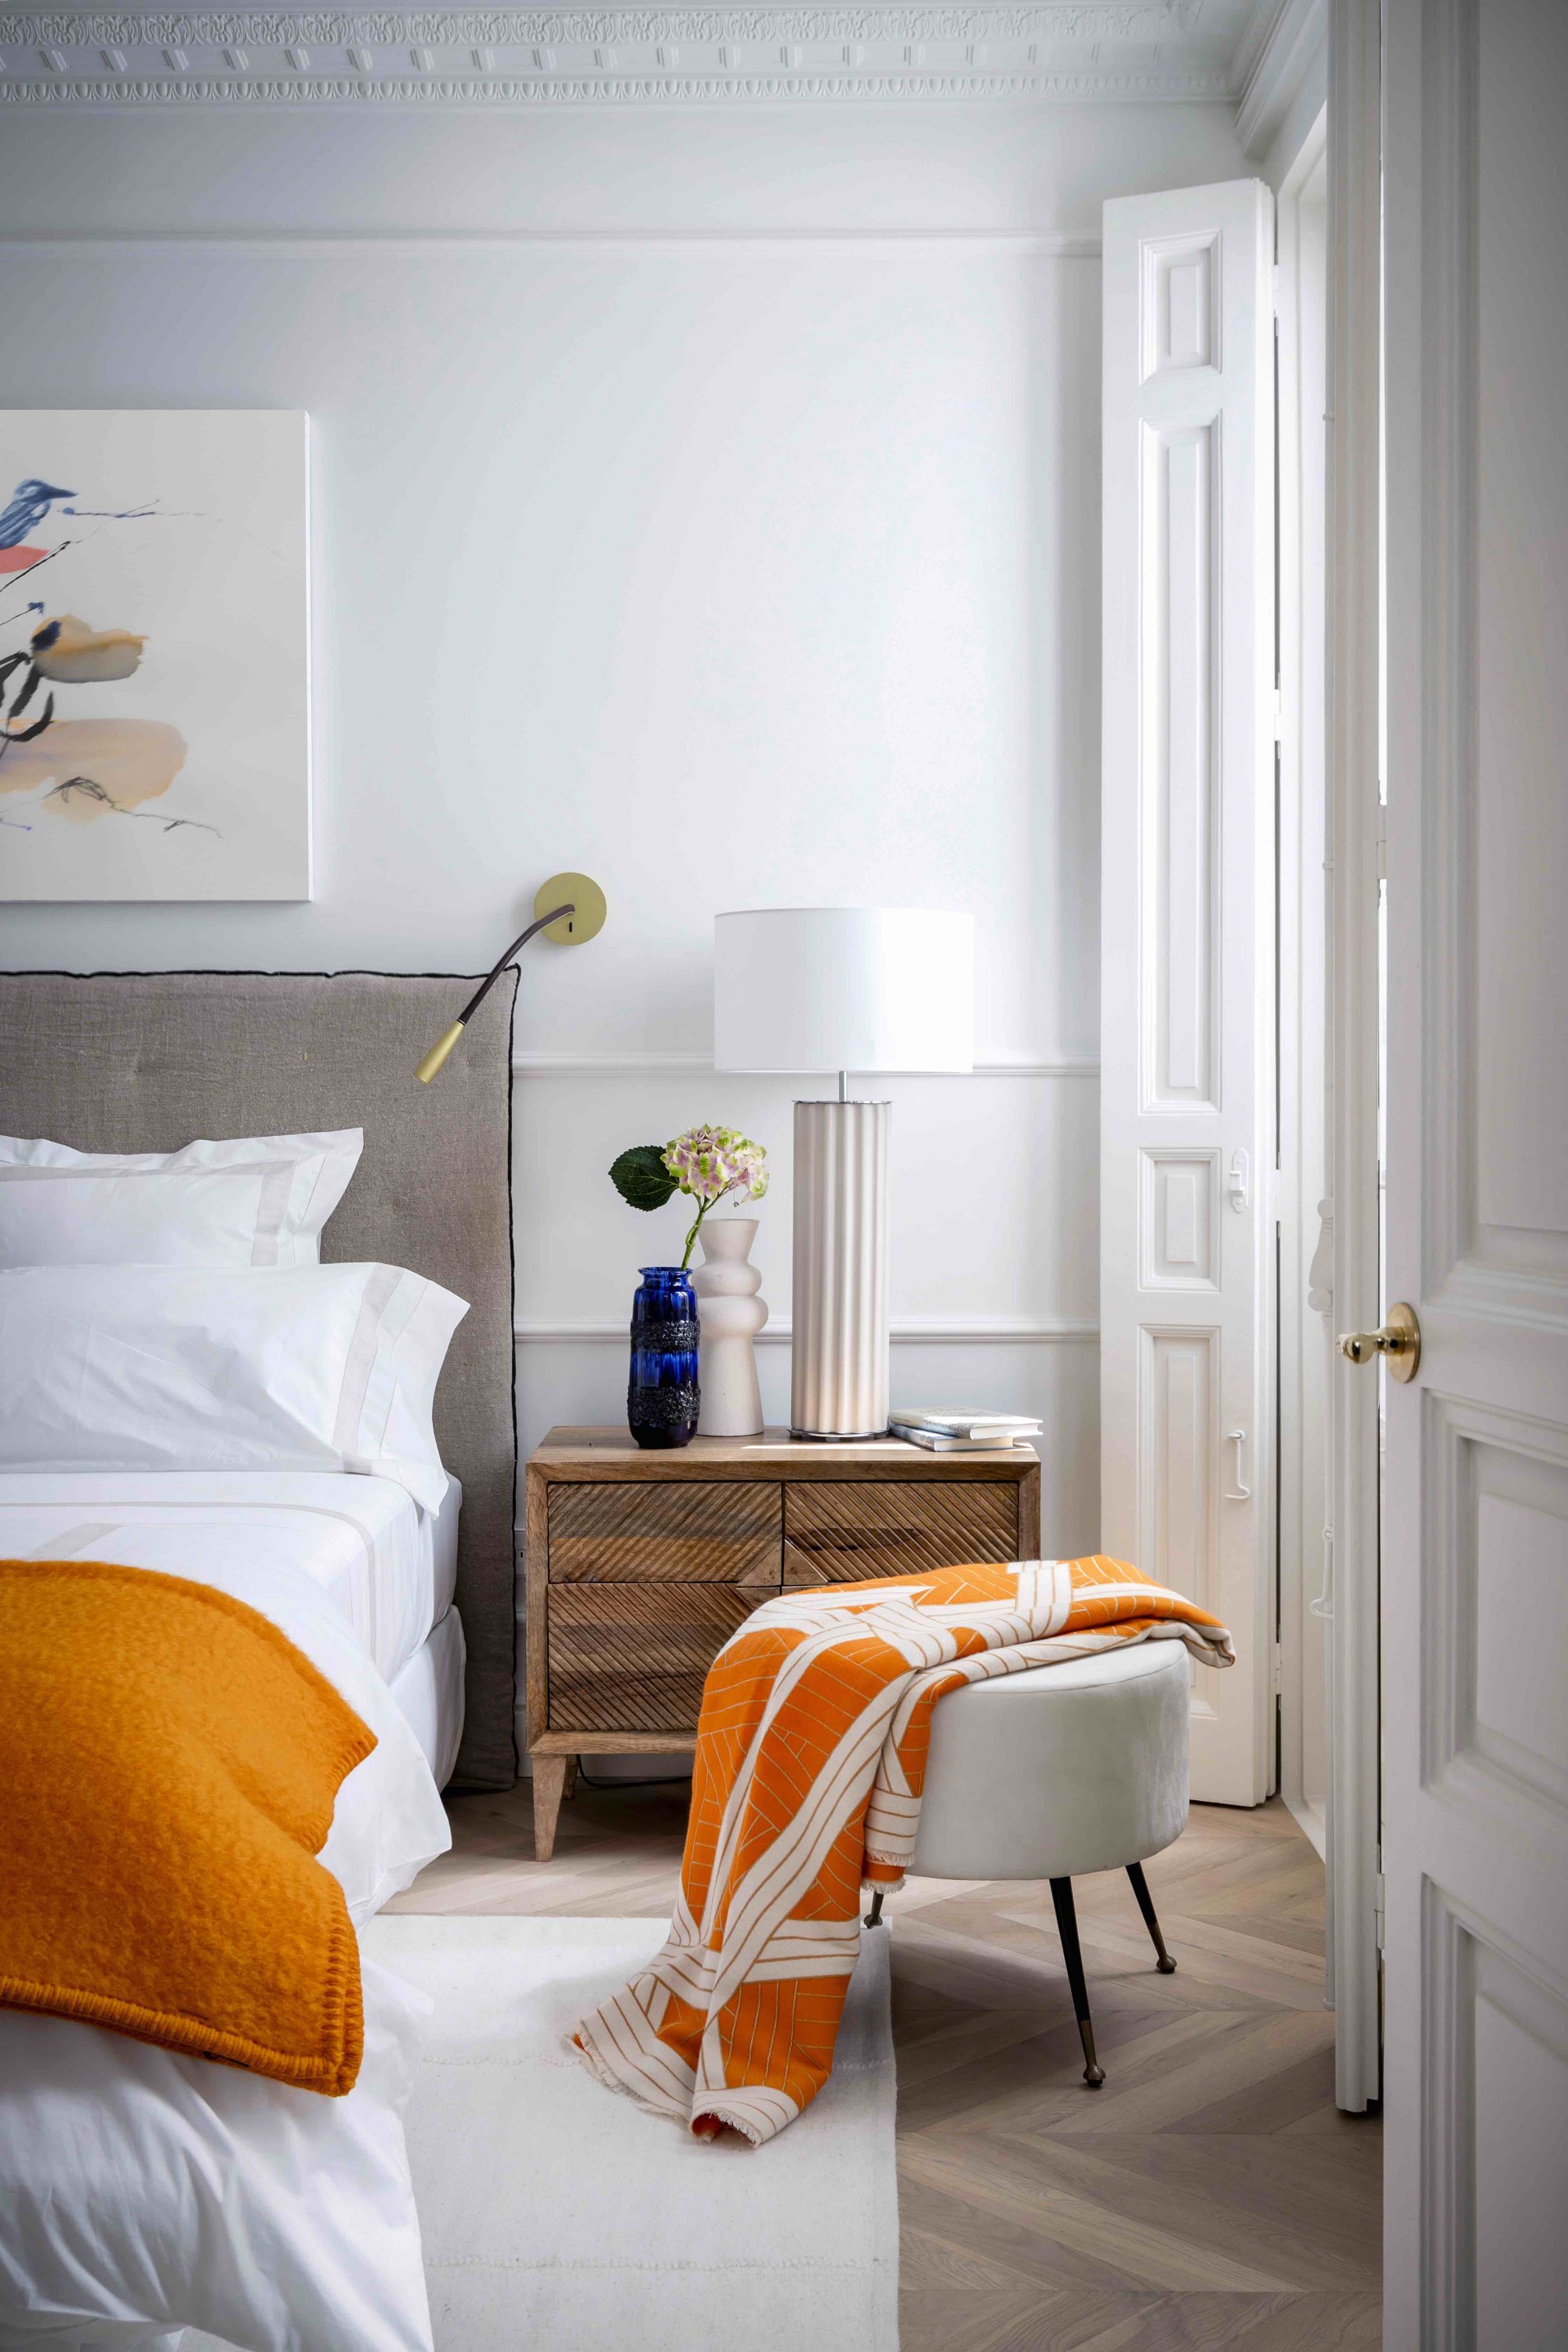 Dormitorio en blanco y naranja con molduras